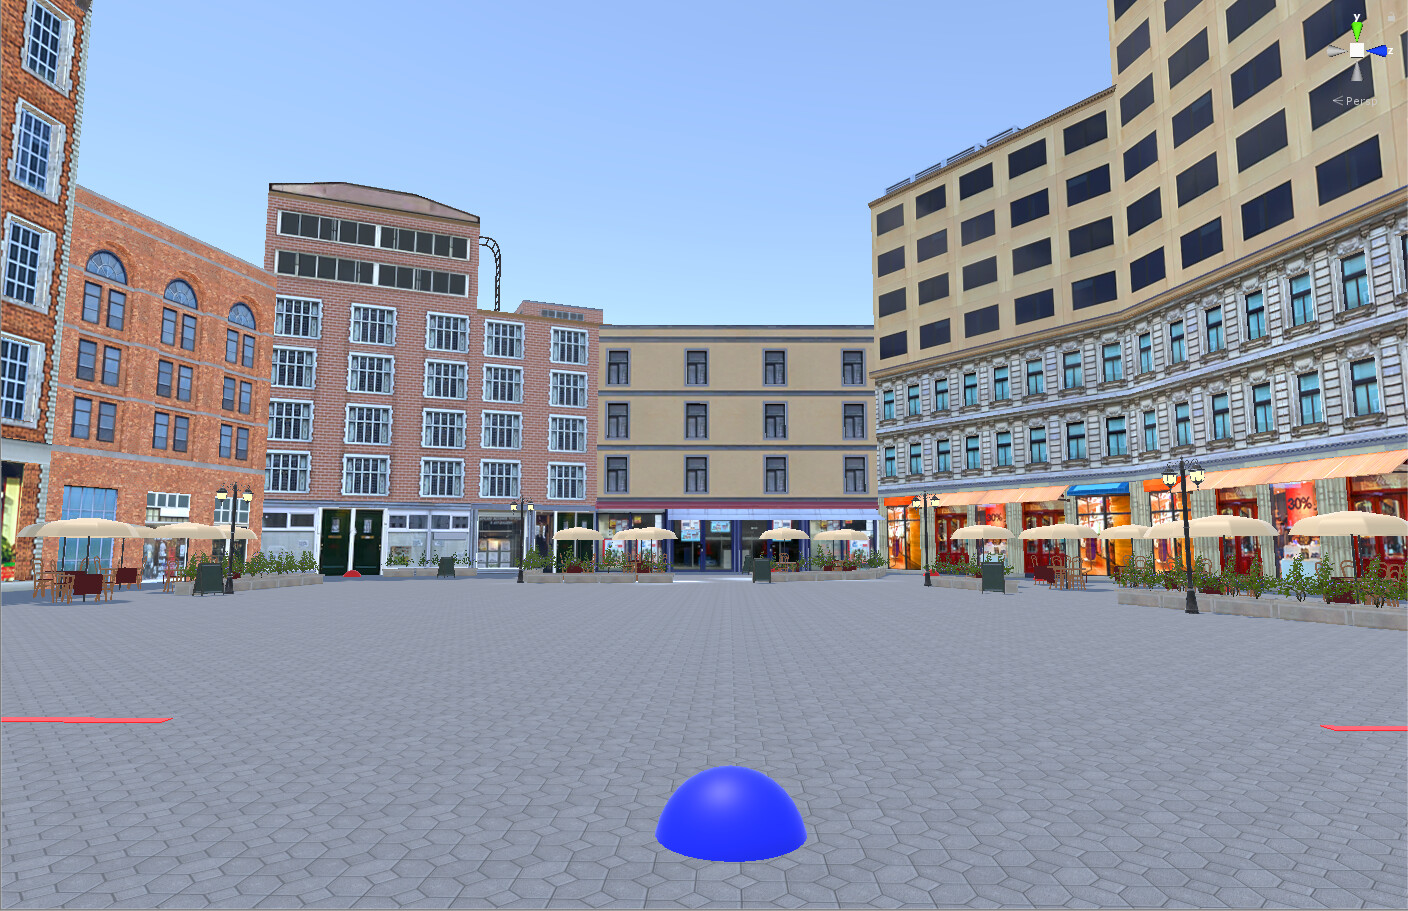 A plaza with debug